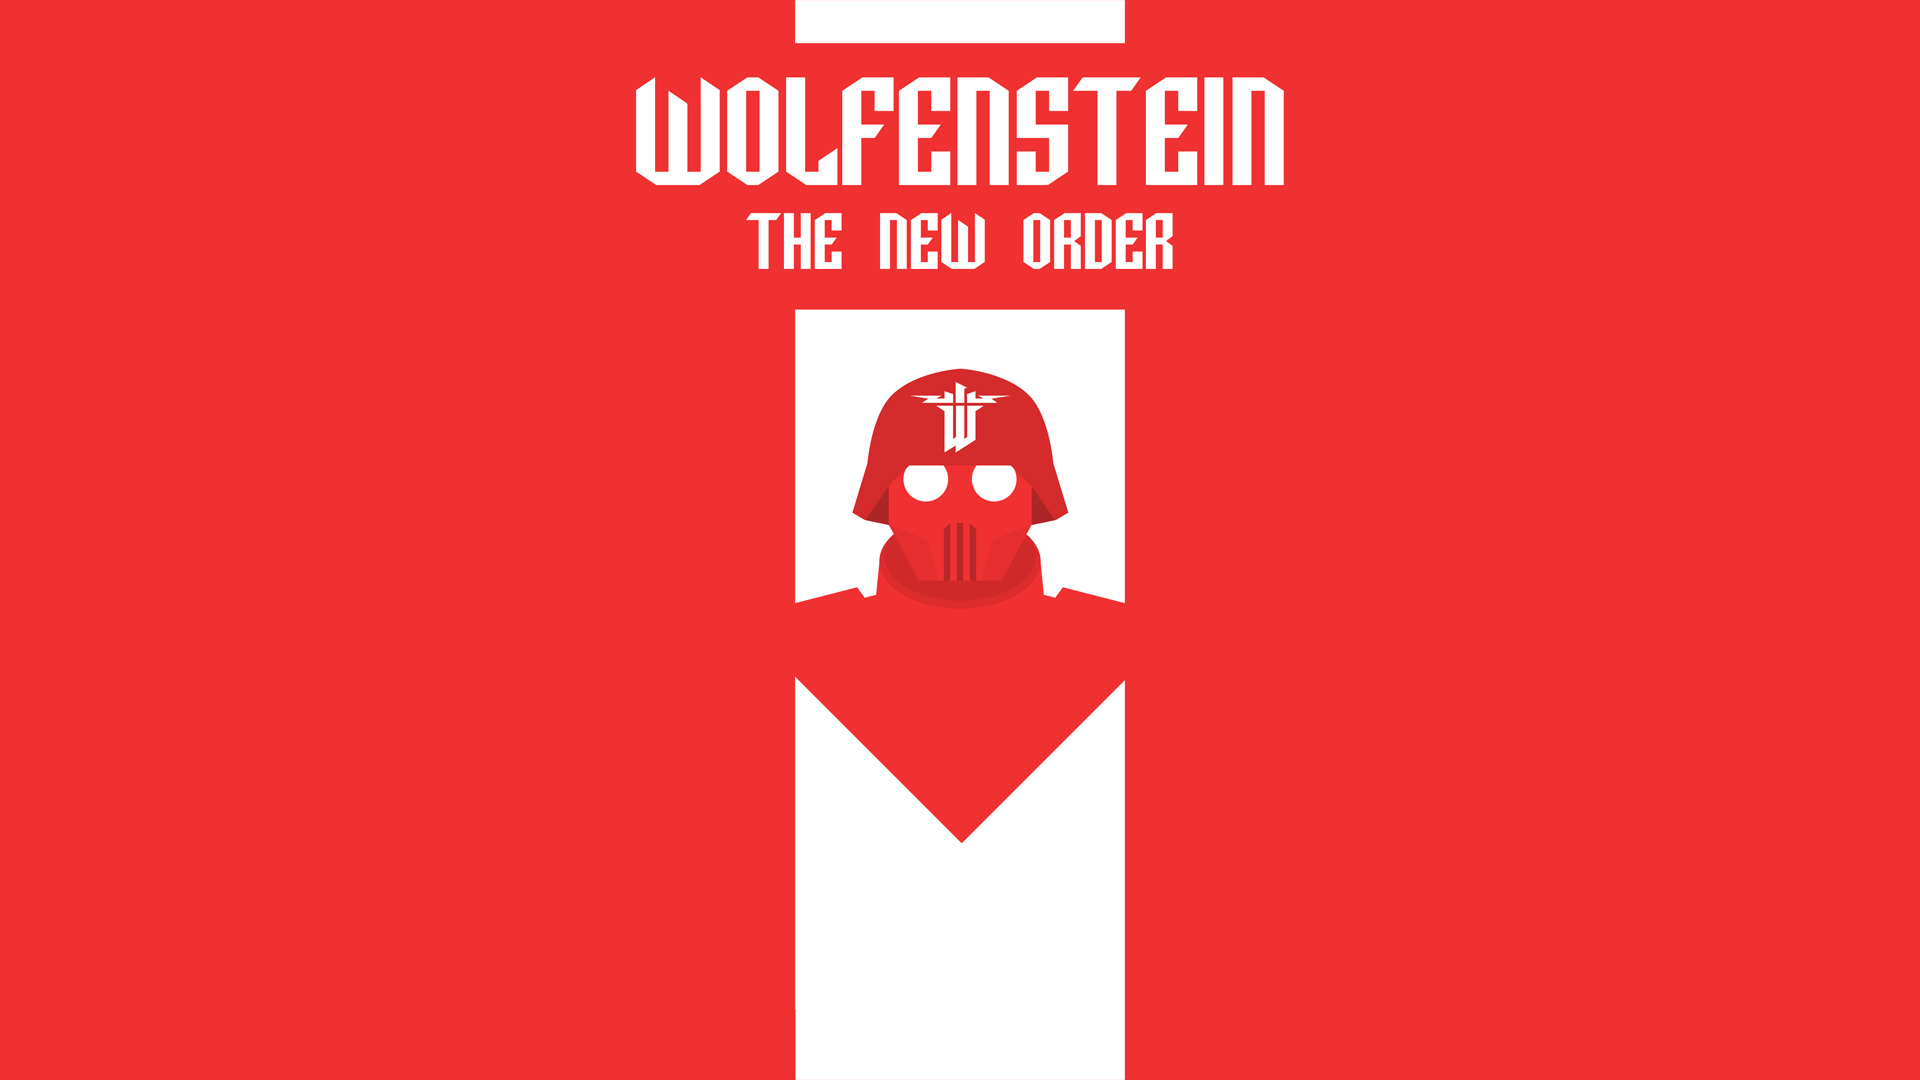 We have new order. Wolfenstein обои. Wolfenstein the New order обои. Wolfenstein флаг. Wolfenstein 2 флаги.